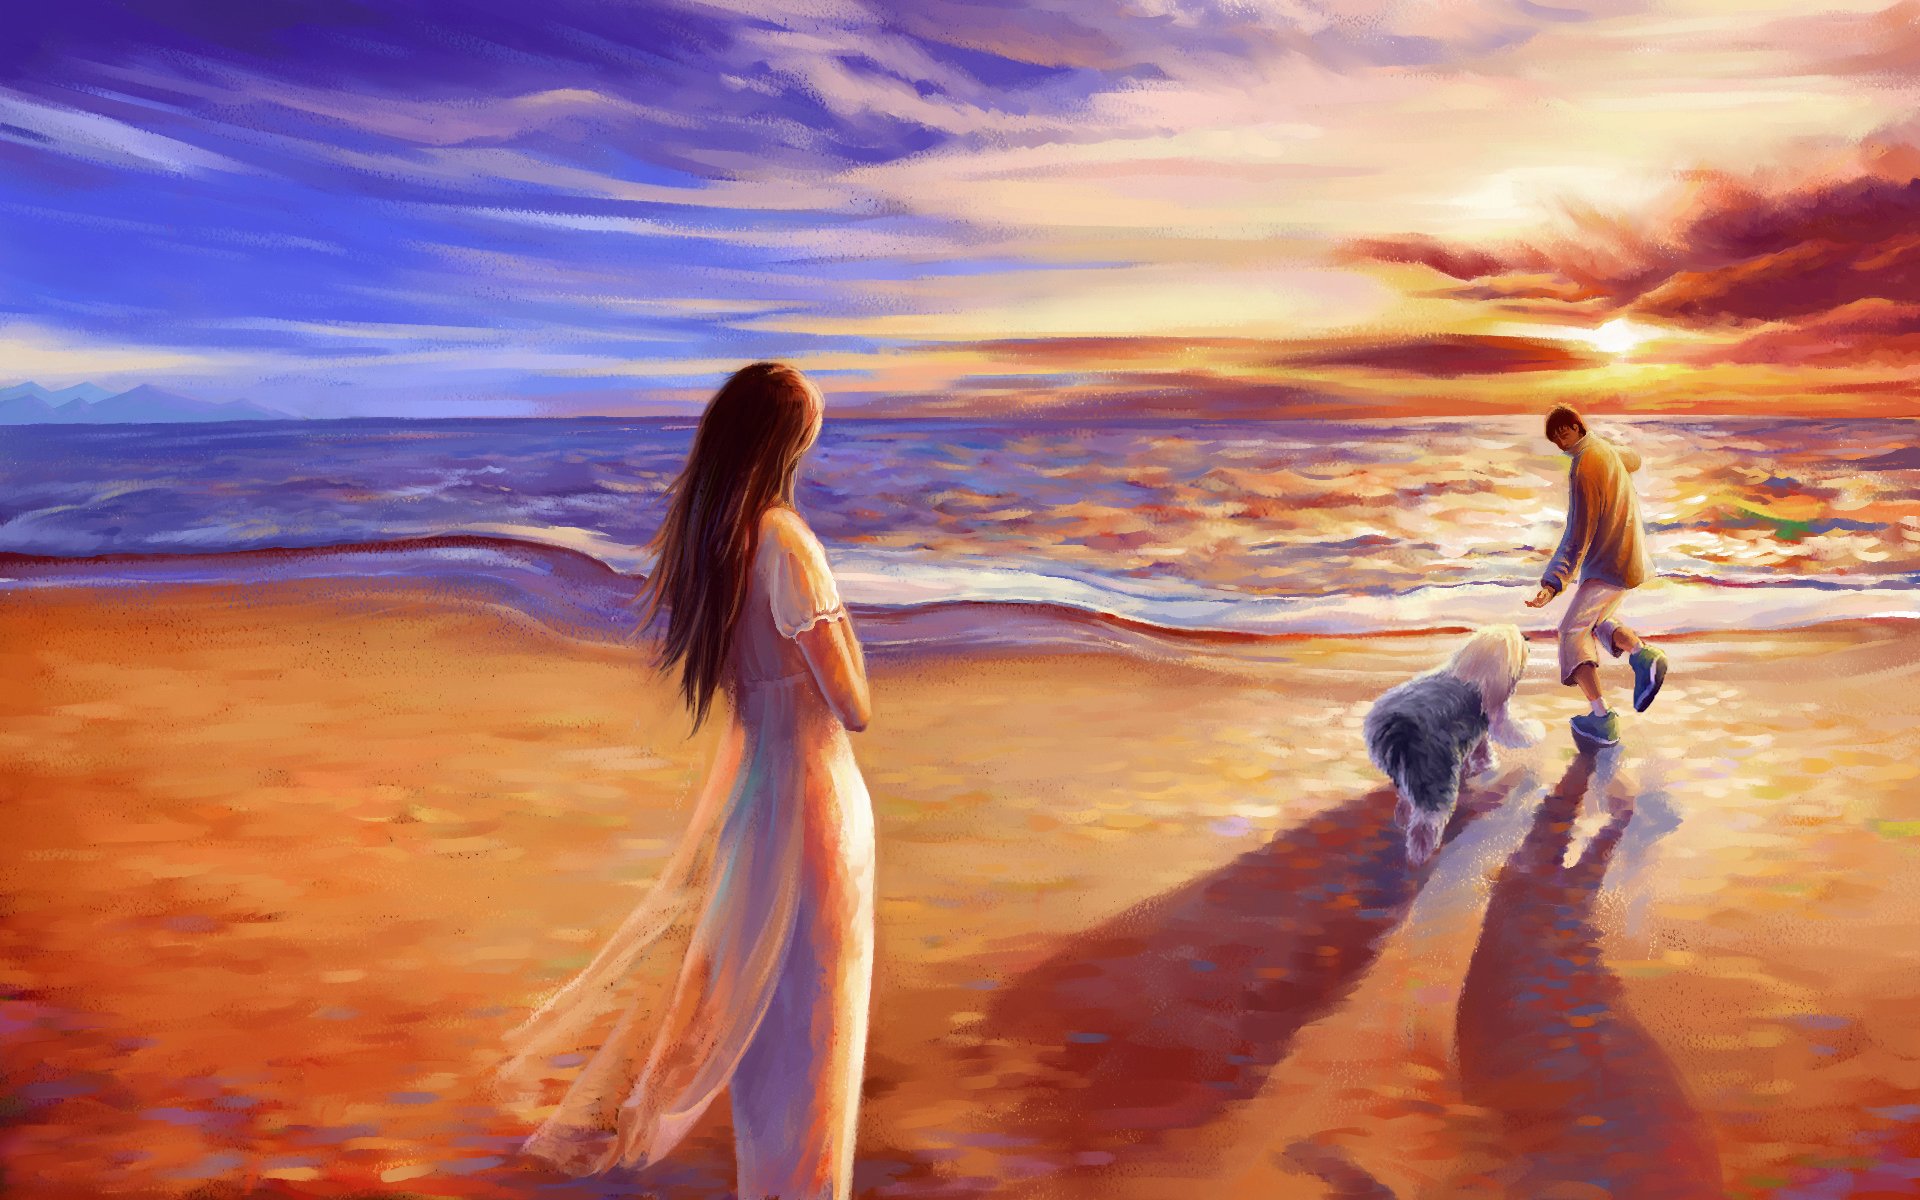 Жизнь полна красоты. Красивые пейзажи с людьми. Девушка на берегу моря. Красивые картины. Душевные картины.